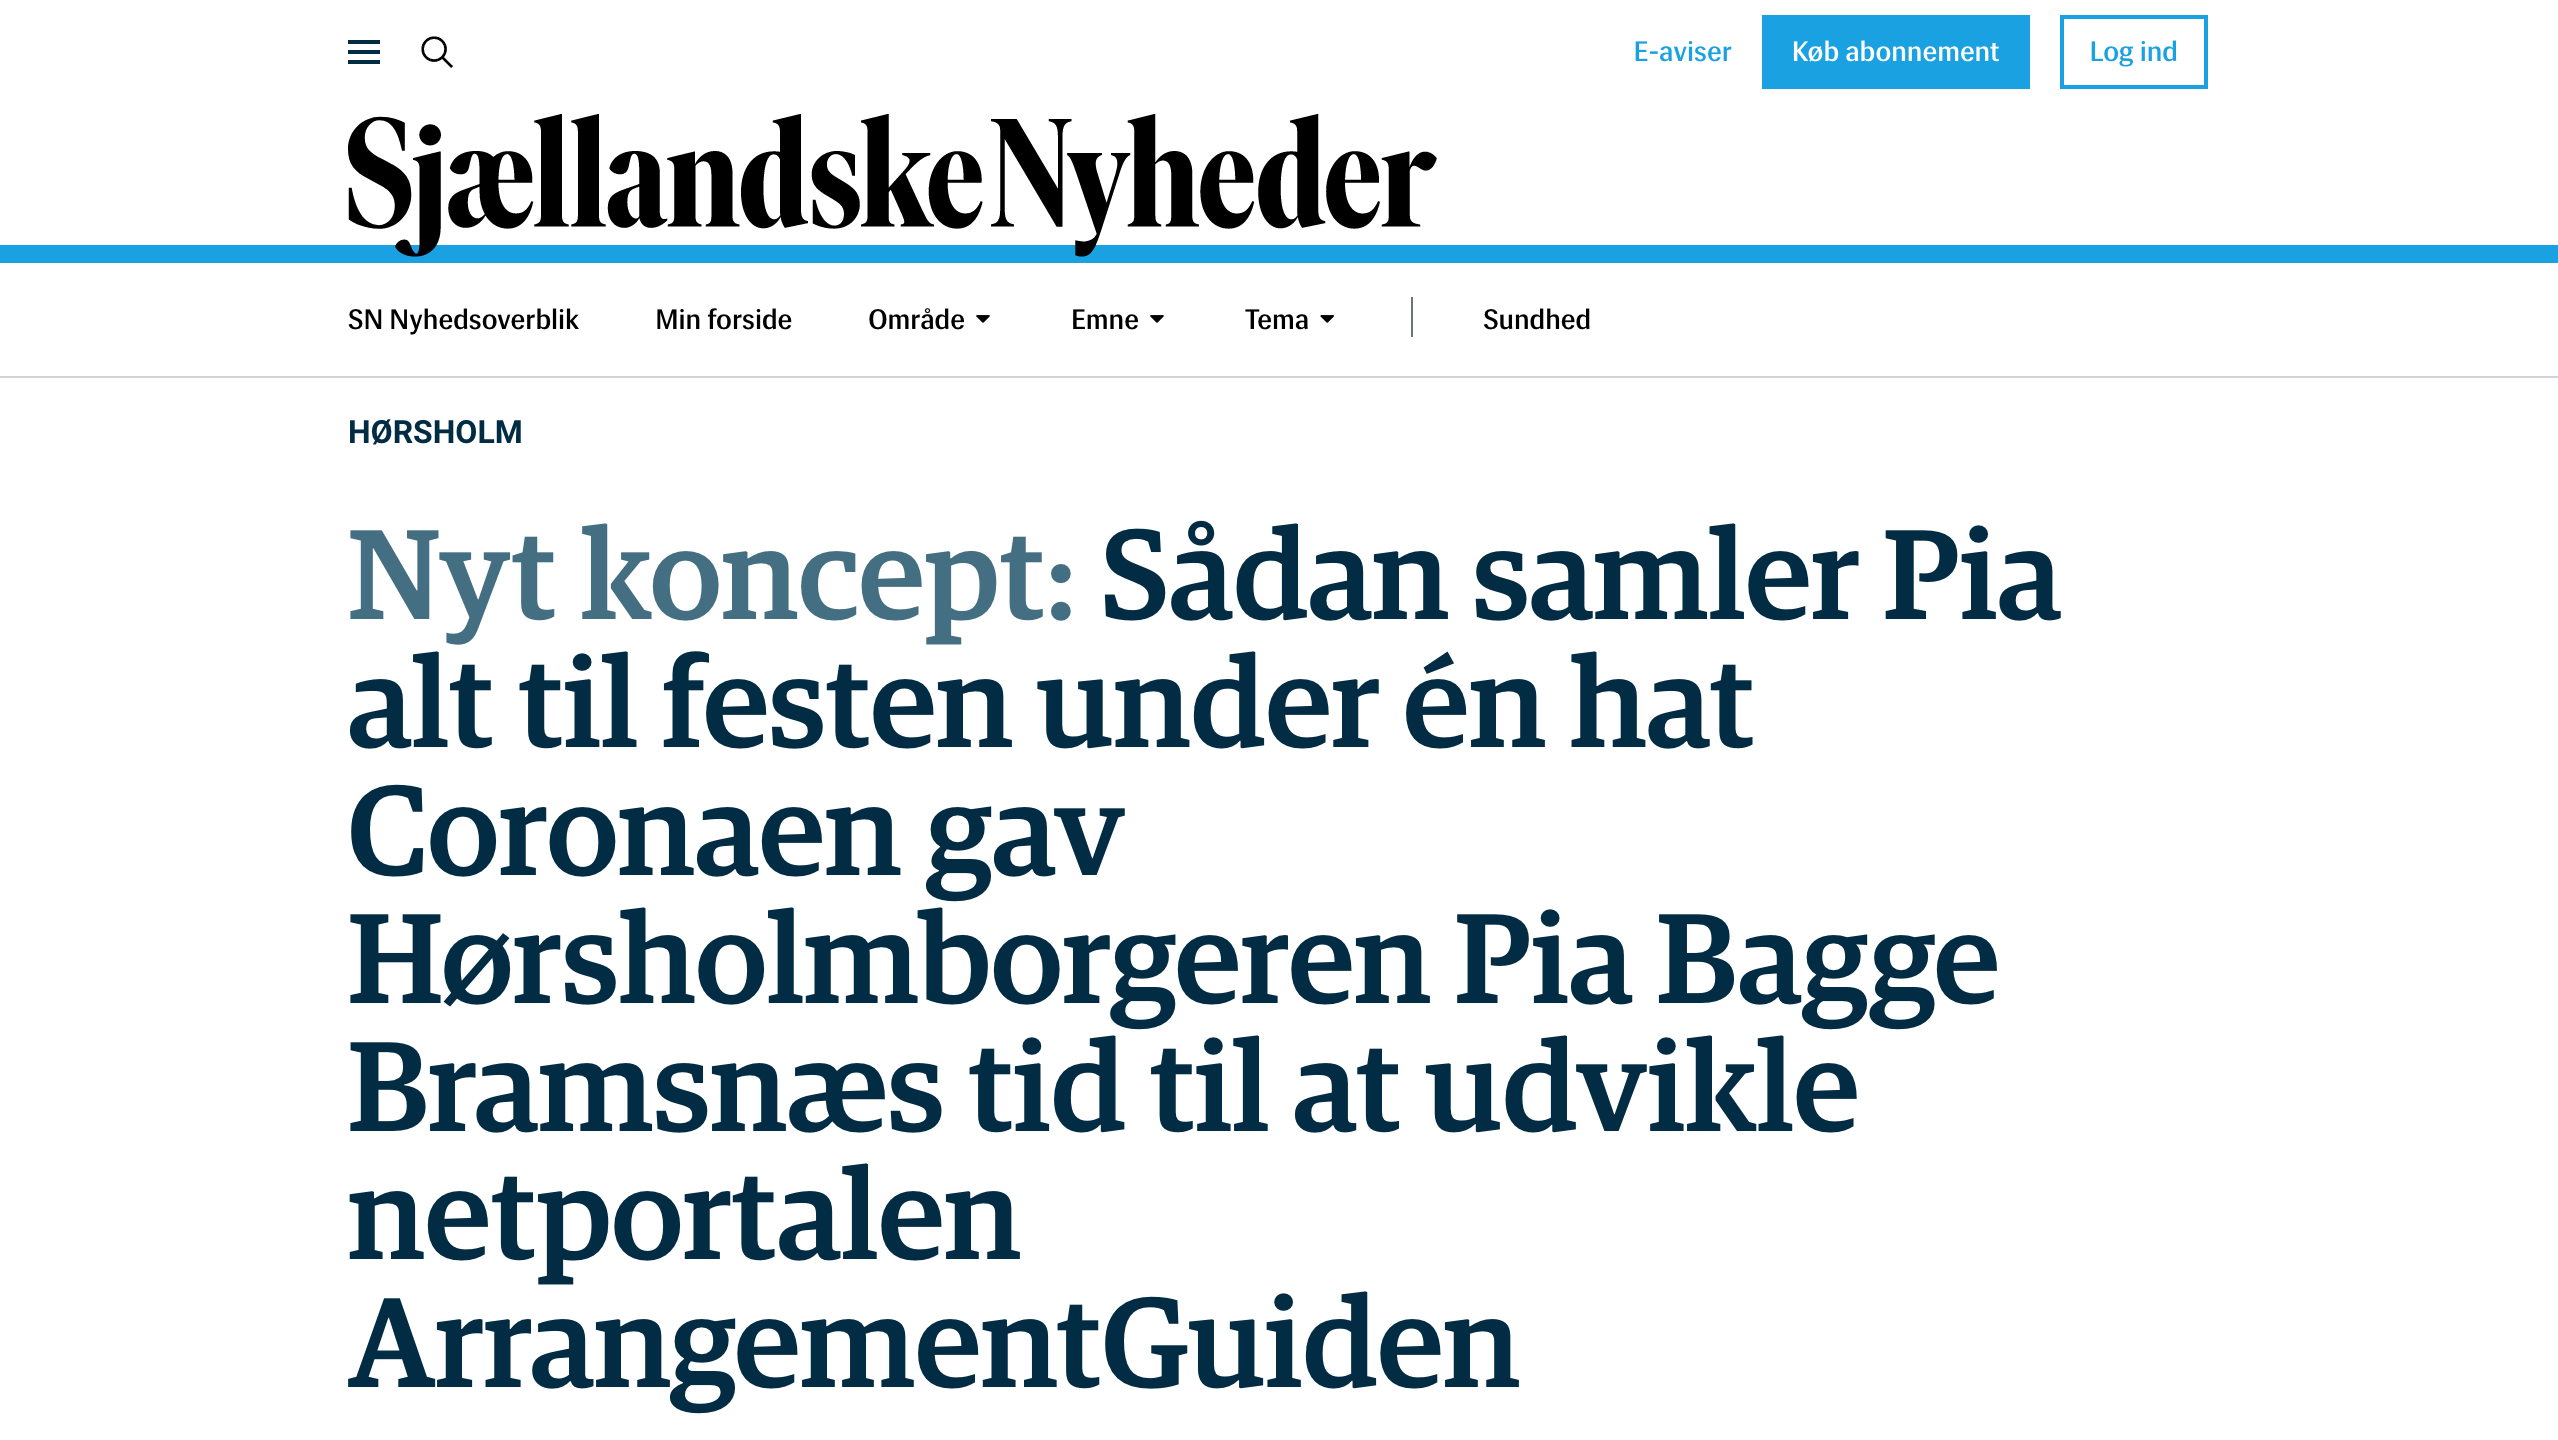 Artikel fra Sjællandske nyheder